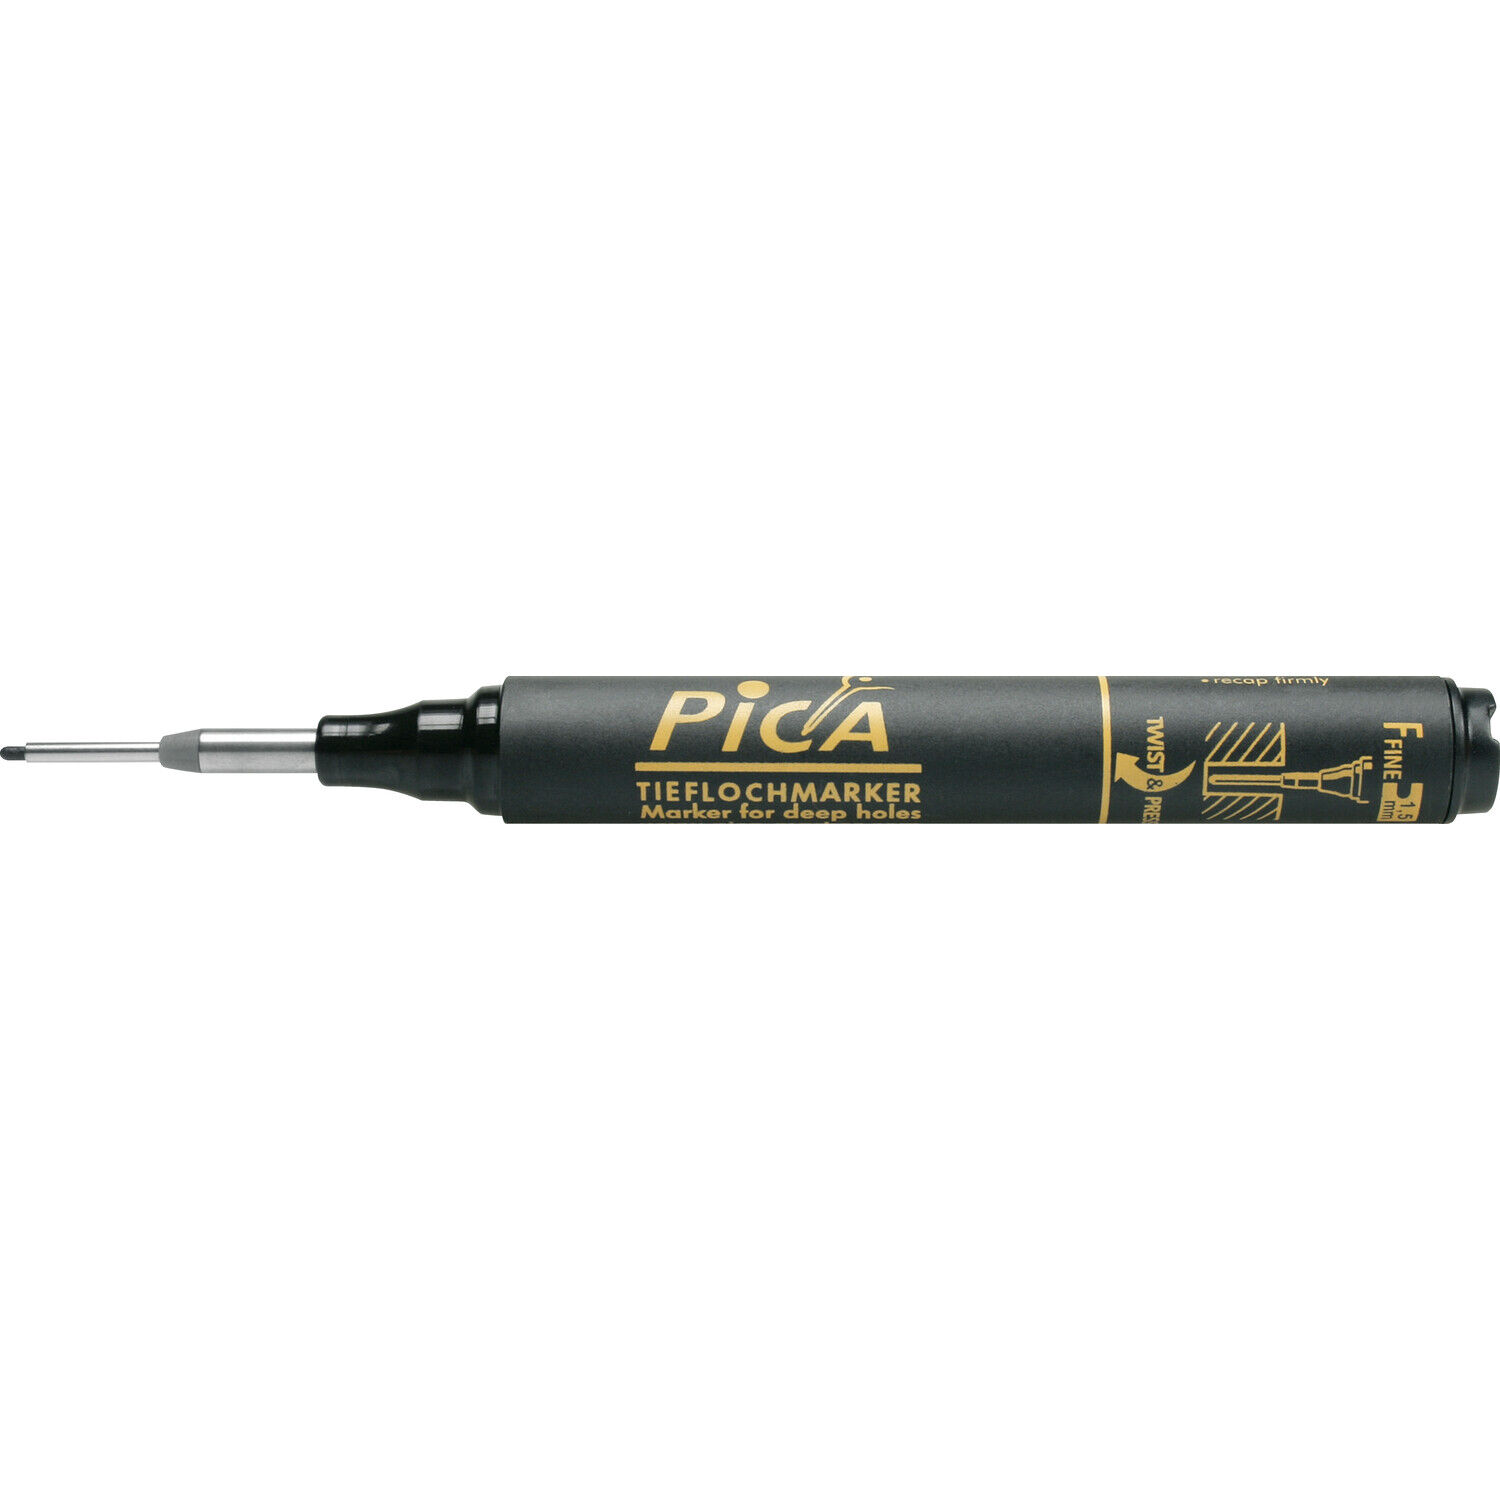 Pica 150 Tieflochmarker (Bohrlochmarker) Markierstift Strichbreite 1,5mm